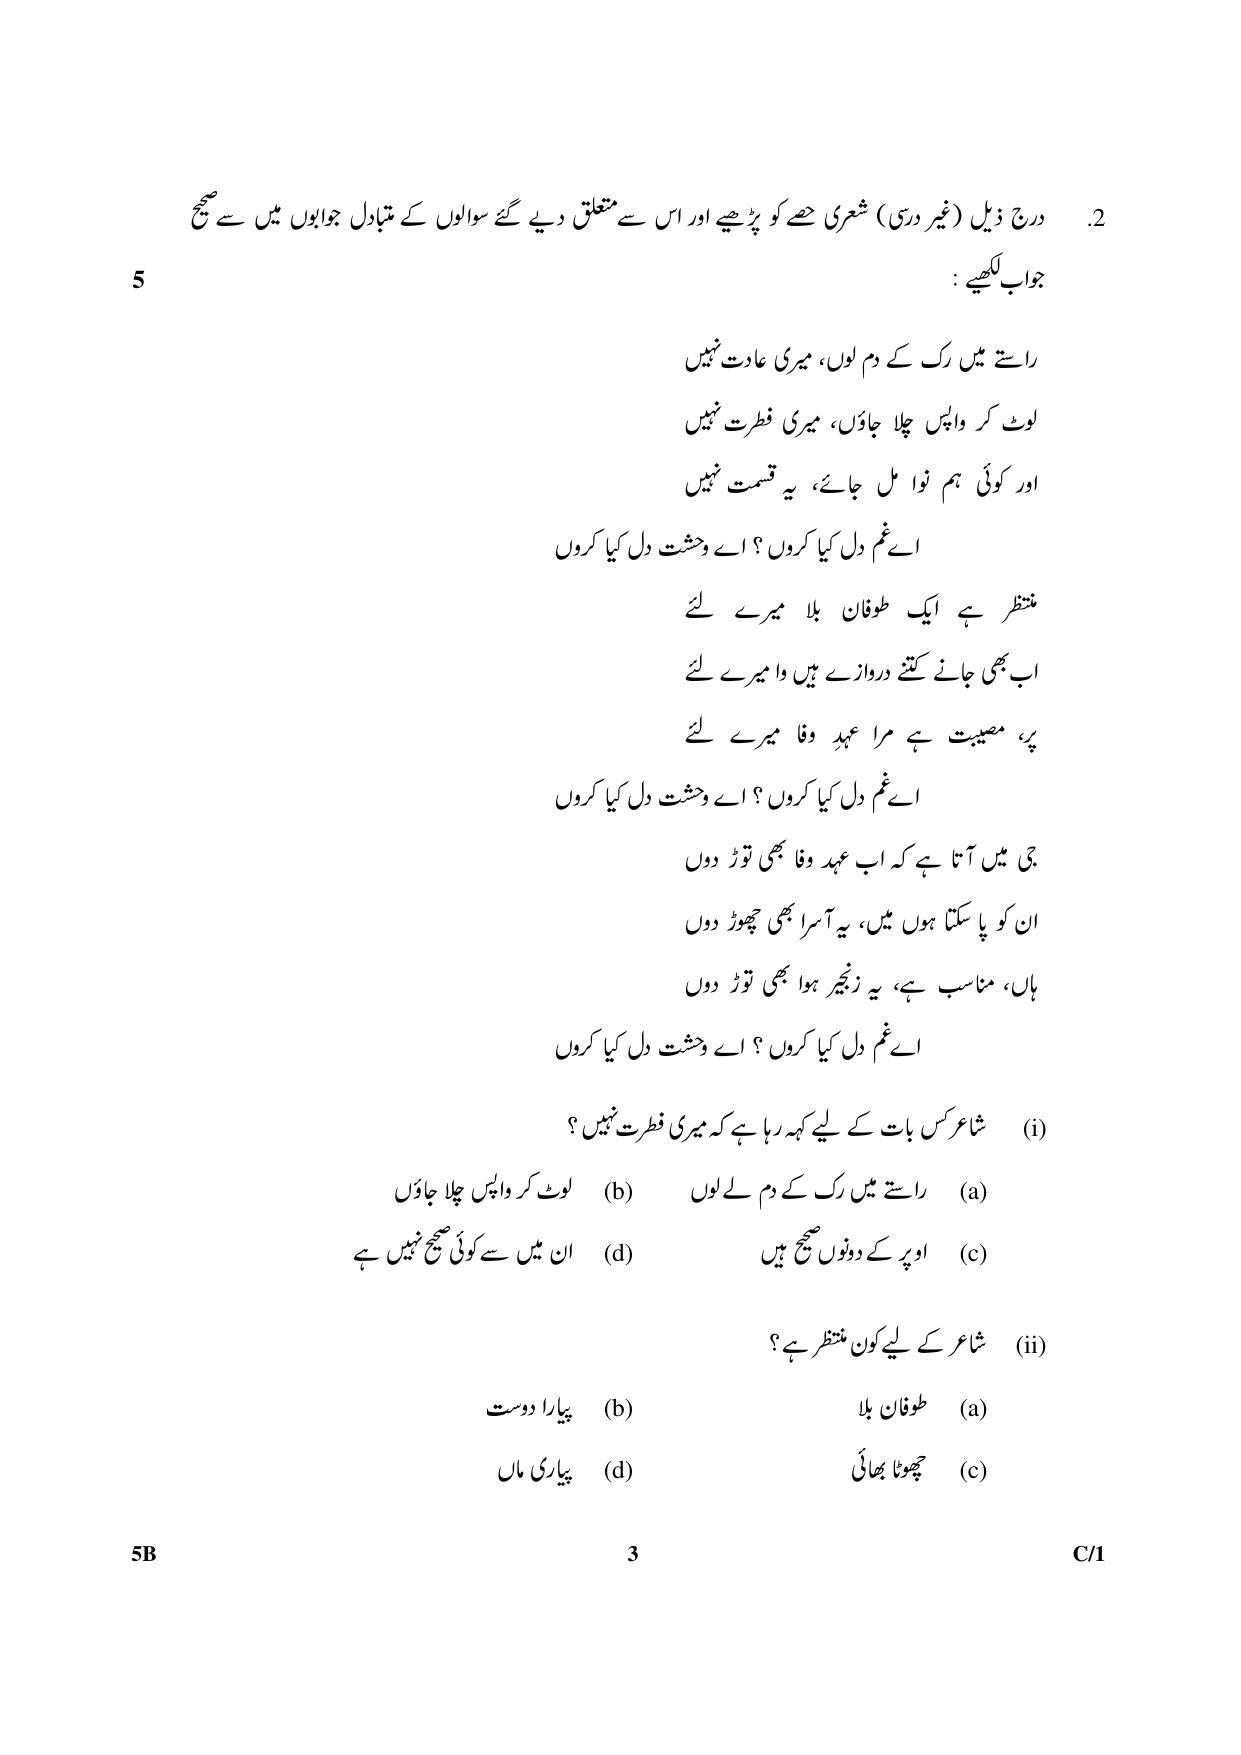 CBSE Class 10 5B Urdu (Course B) 2018 Compartment Question Paper - Page 3